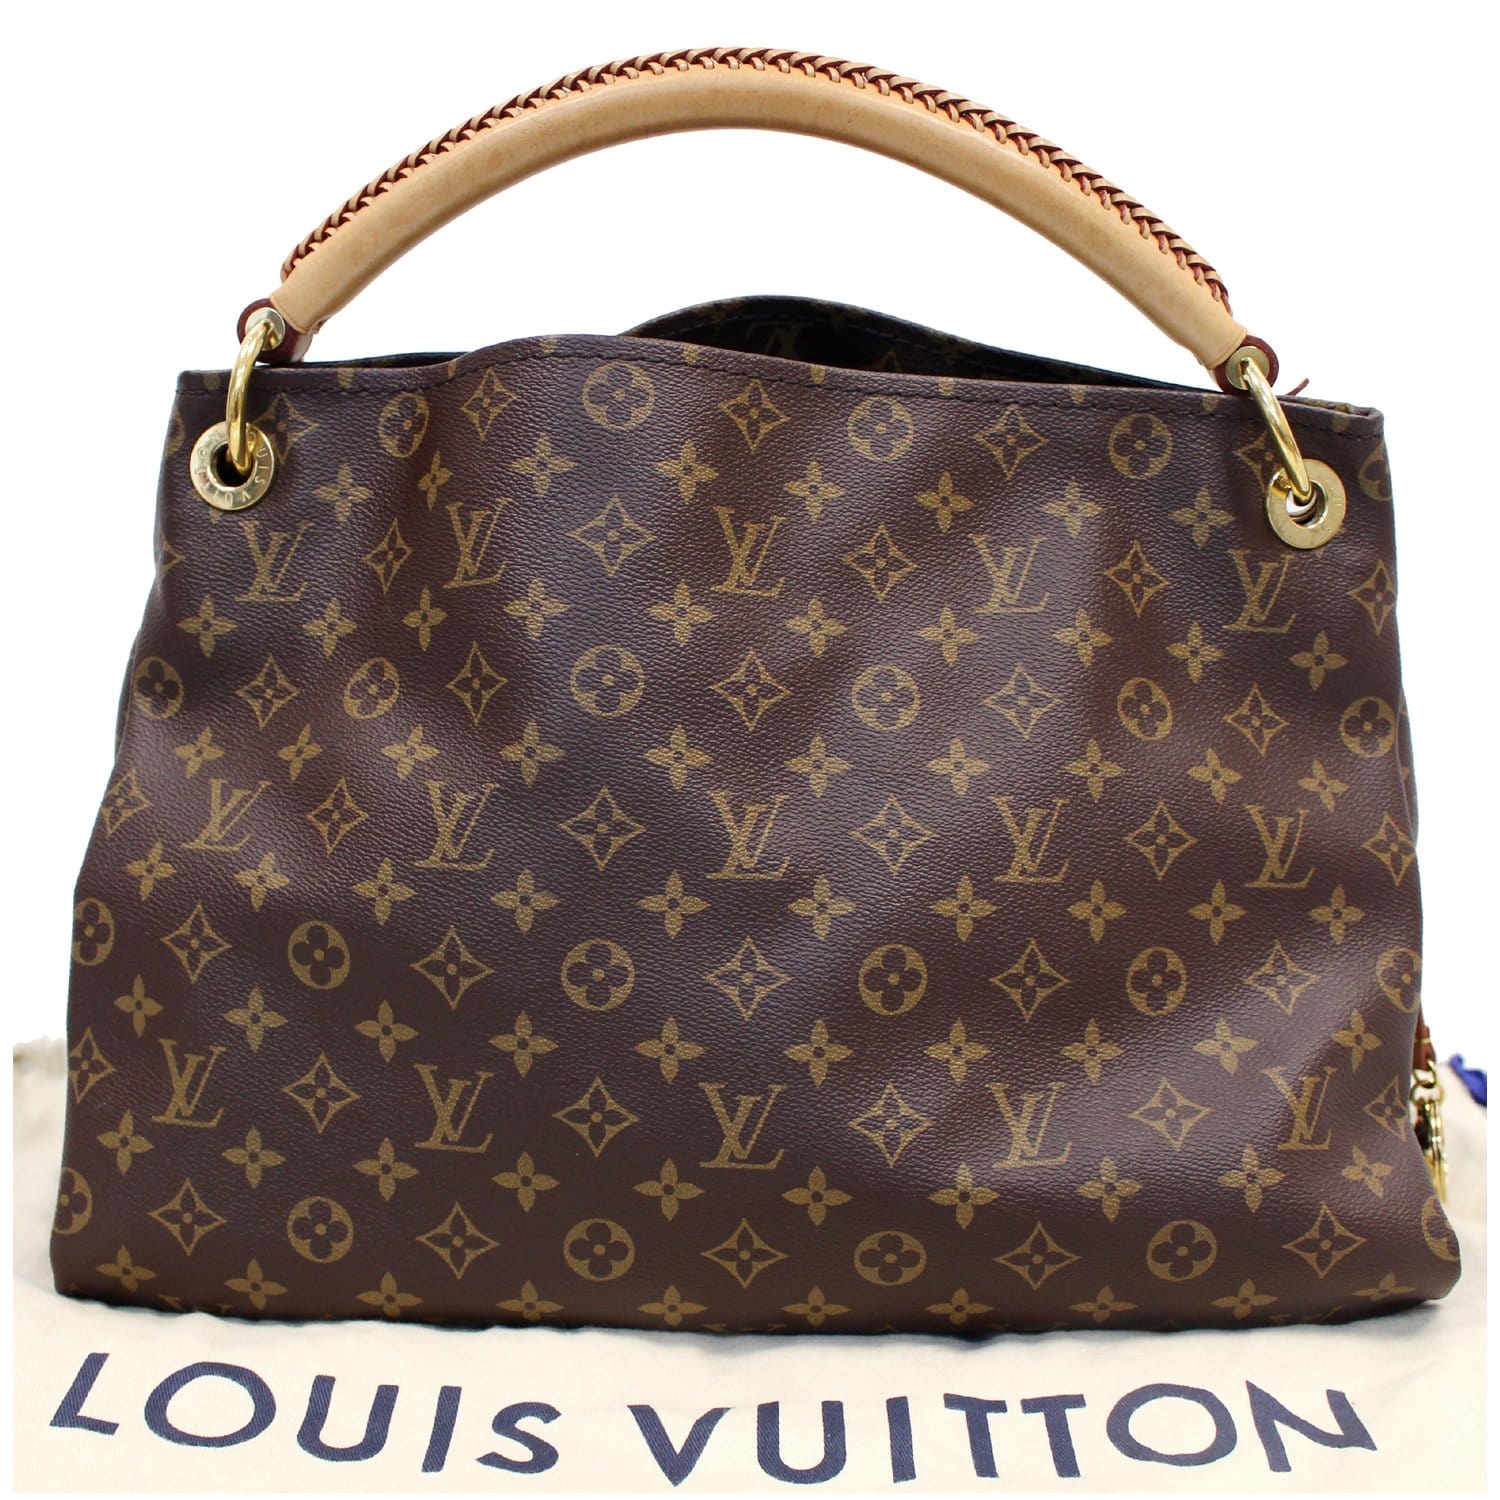 Louis Vuitton, Bags, 0 Authentic Louis Vuitton Brand New M44869 Artsy Mm